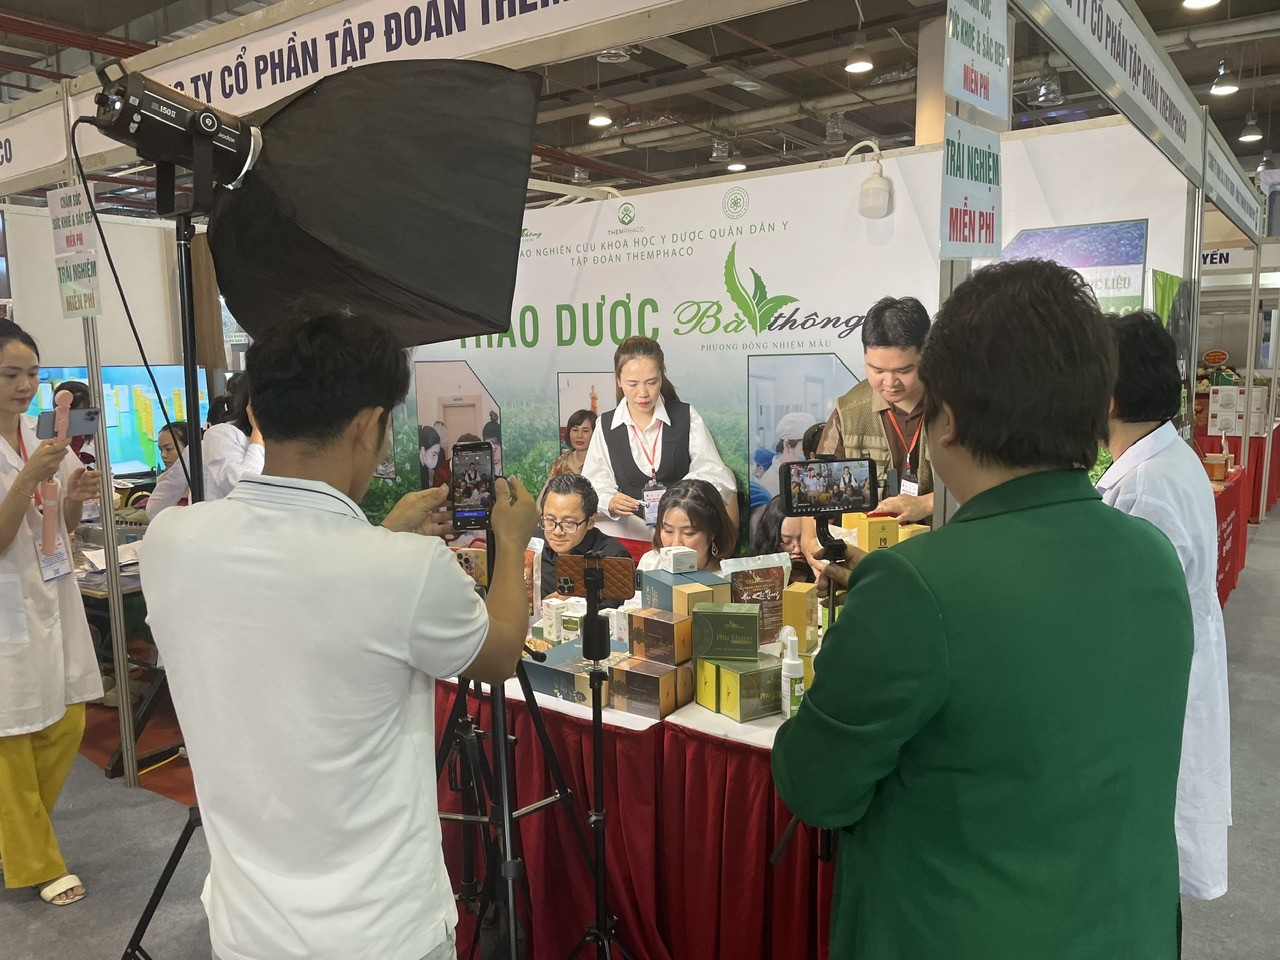 Hoạt động ivestream bán hàng trên các nền tảng xã hội  tại Triển lãm xúc tiến thương mại và đầu tư Doanh nhân trẻ Việt Nam tại tỉnh Quảng Ninh